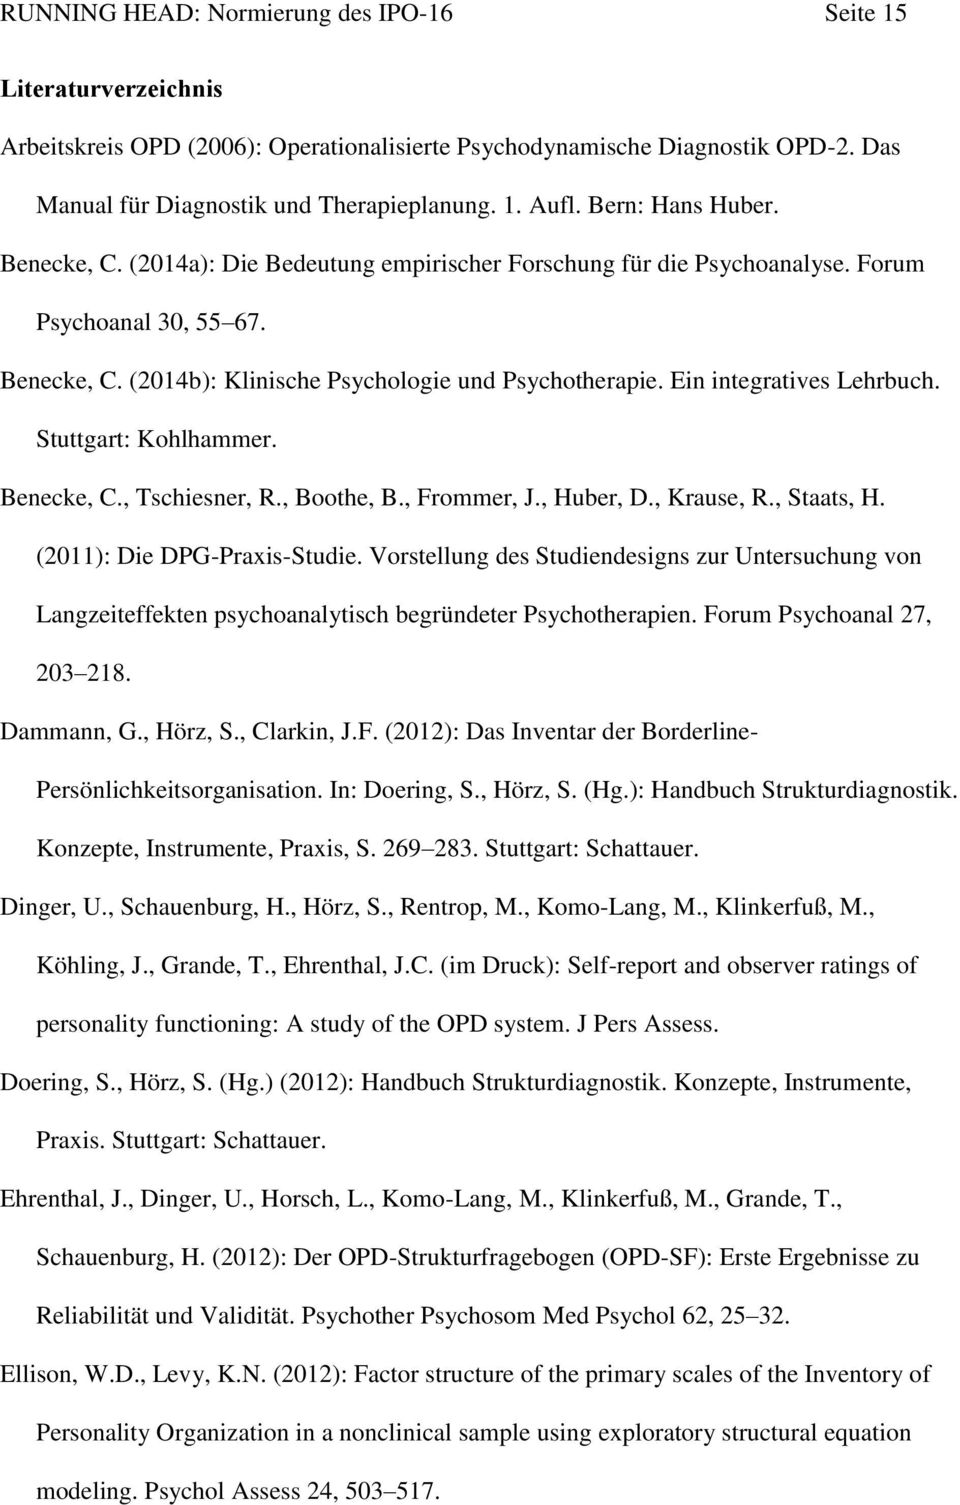 Ein integratives Lehrbuch. Stuttgart: Kohlhammer. Benecke, C., Tschiesner, R., Boothe, B., Frommer, J., Huber, D., Krause, R., Staats, H. (2011): Die DPG-Praxis-Studie.